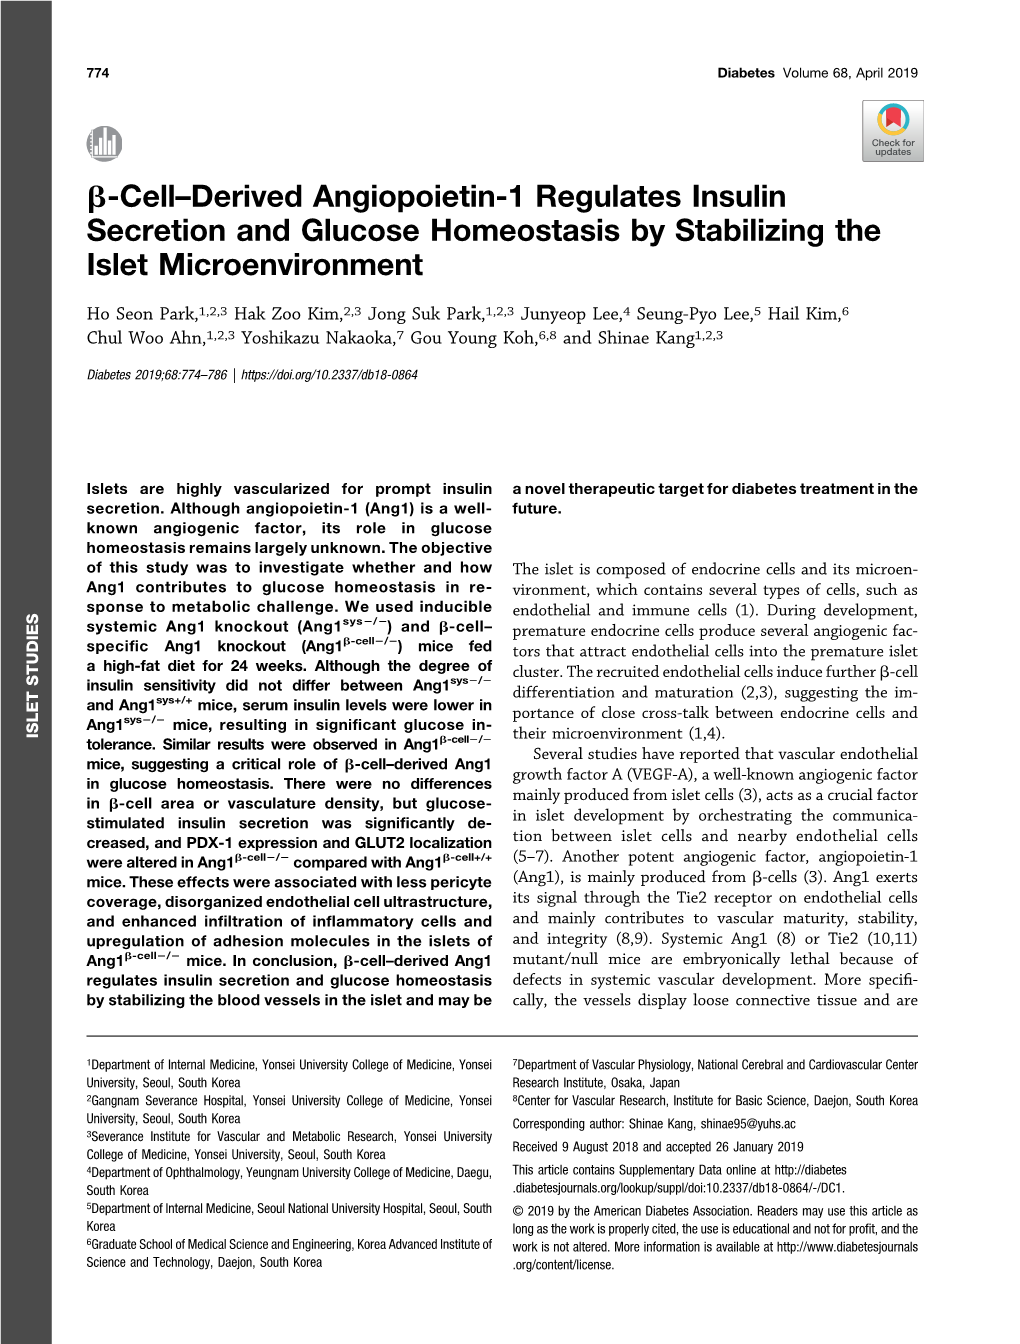 Β-Cell–Derived Angiopoietin-1 Regulates Insulin Secretion And